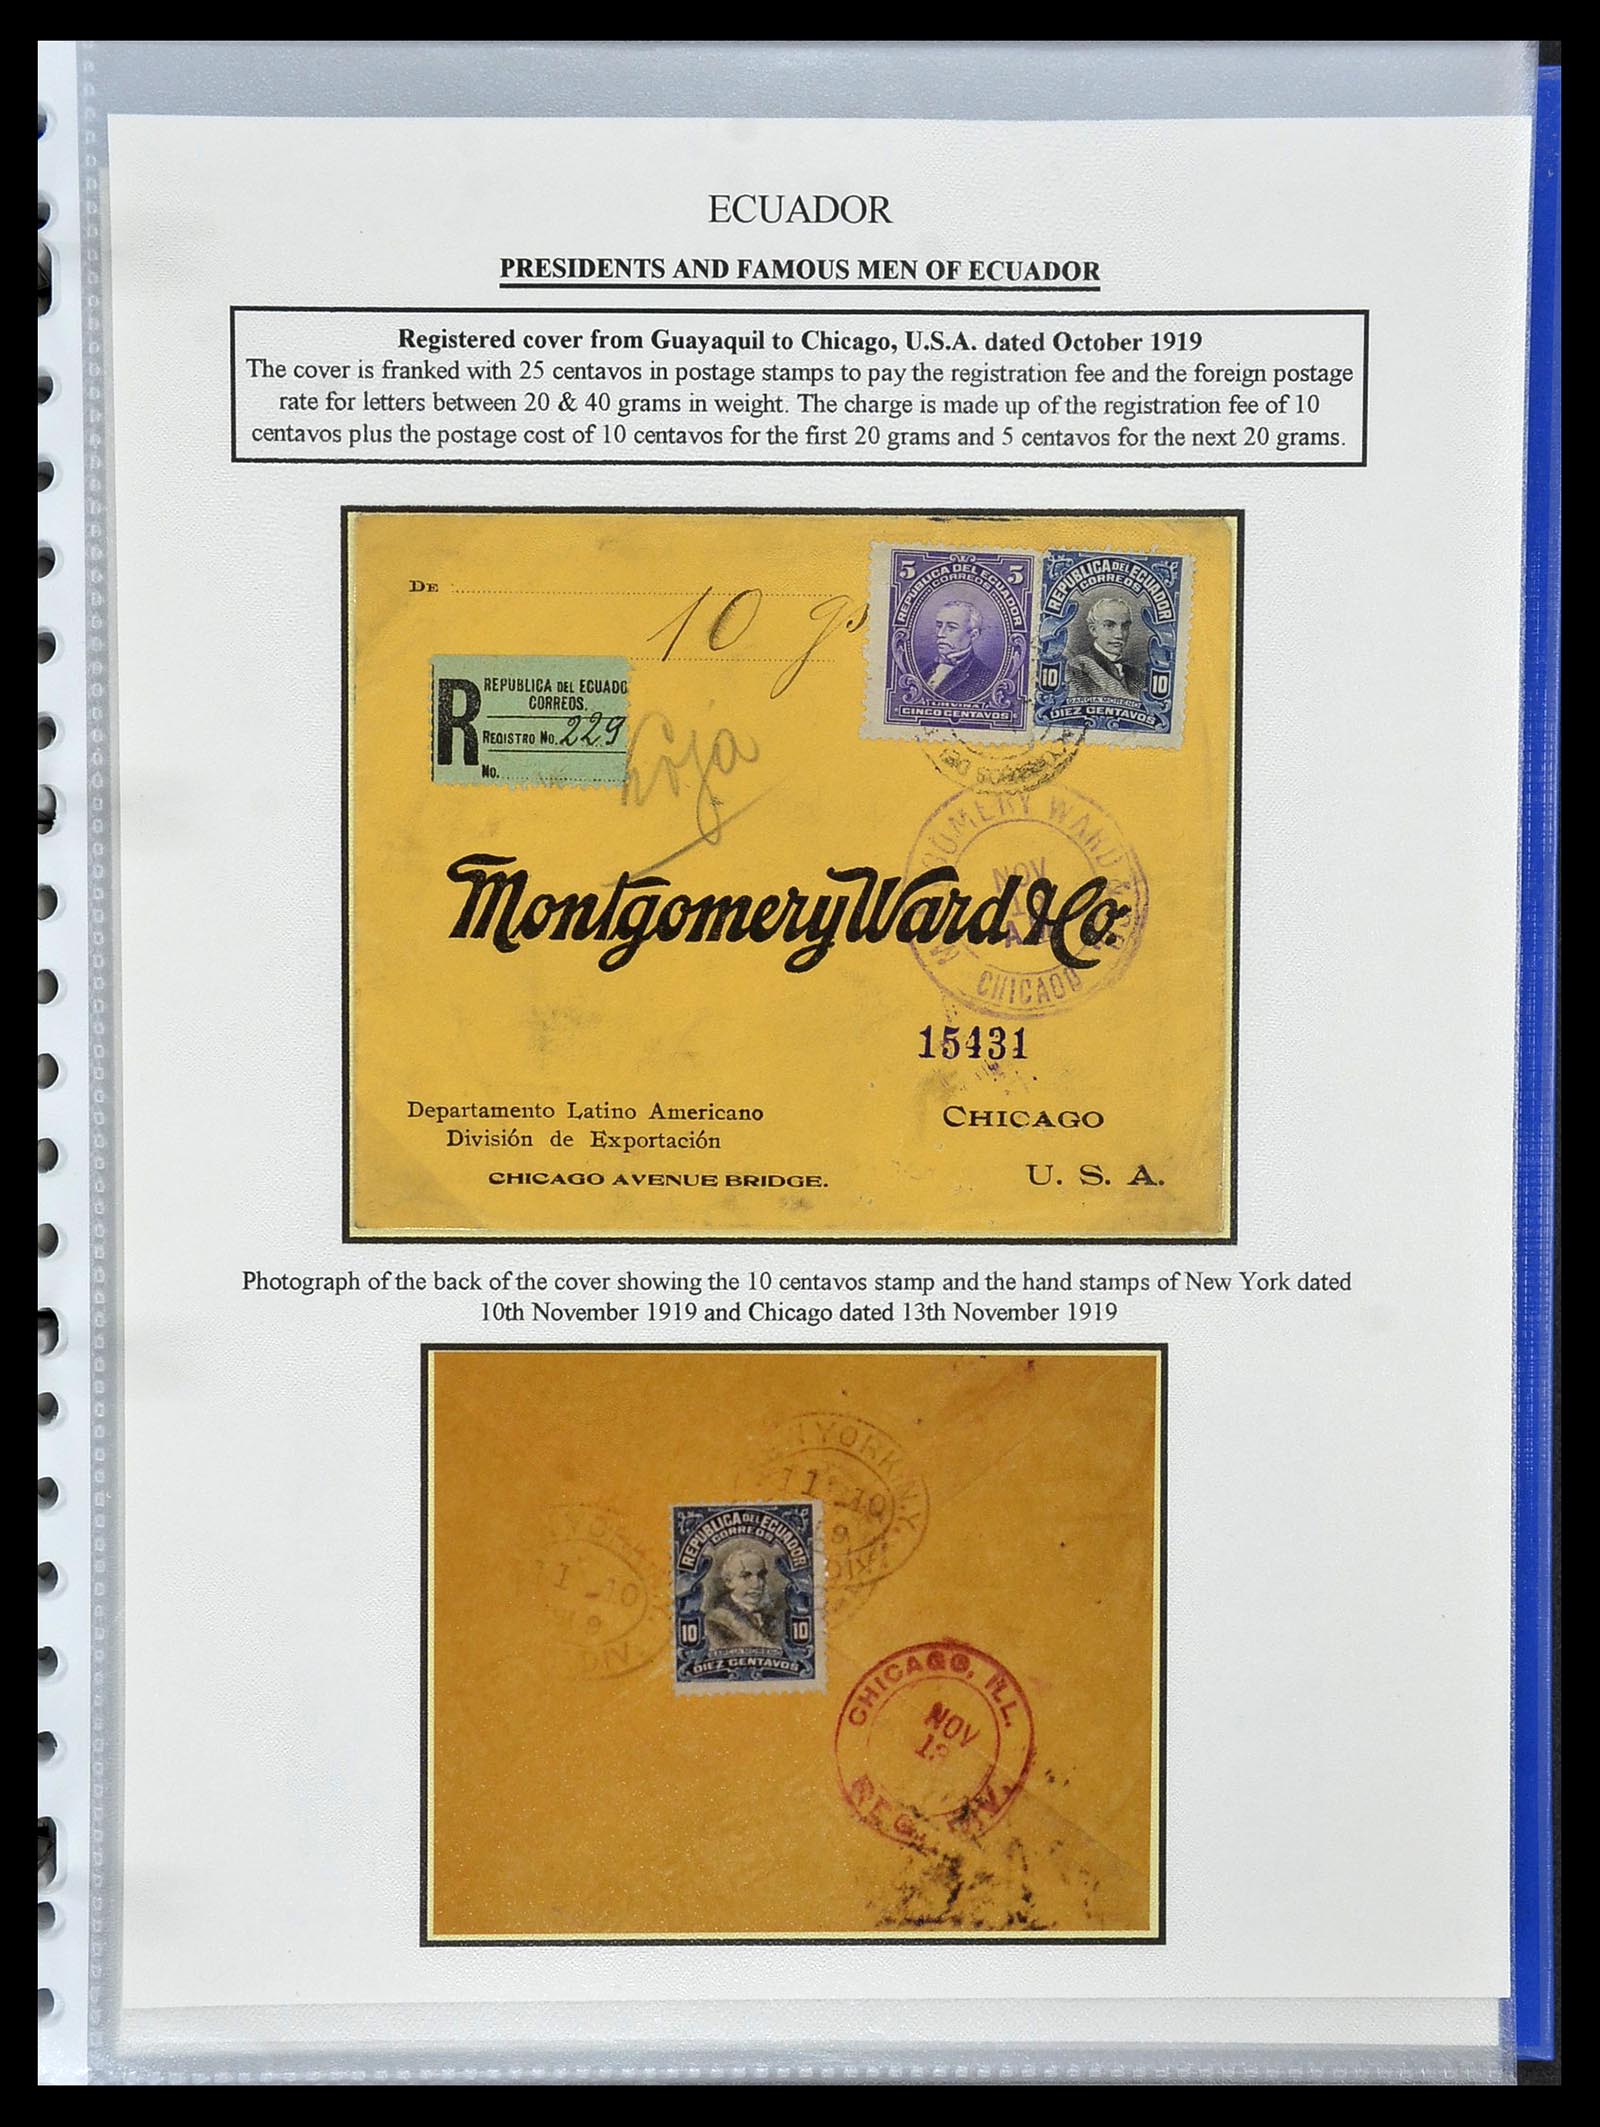 34523 034 - Stamp Collection 34523 Ecuador 1899-1952.